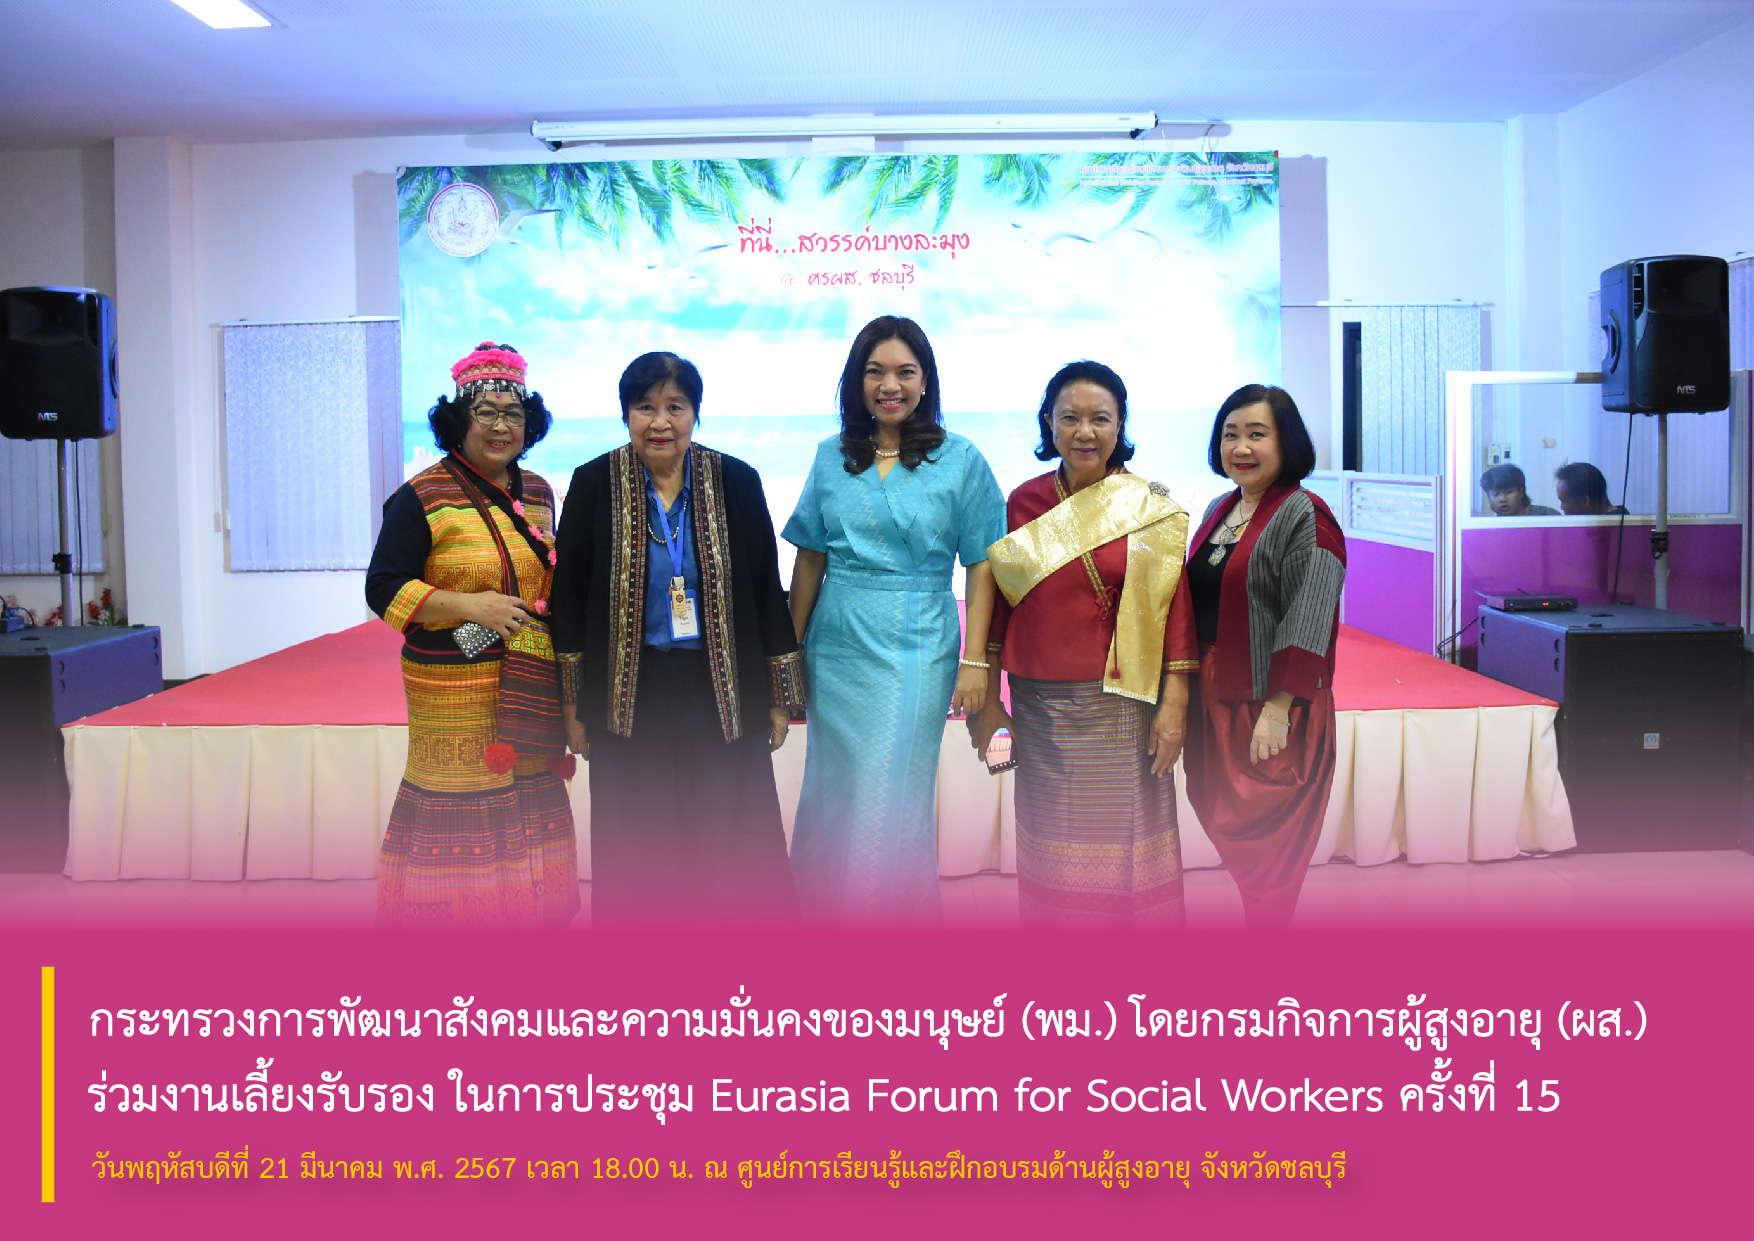 กระทรวงการพัฒนาสังคมและความมั่นคงของมนุษย์ (พม.) โดยกรมกิจการผู้สูงอายุ (ผส.) ร่วมงานเลี้ยงรับรอง ในการประชุม Eurasia Forum for Social Workers ครั้งที่ 15